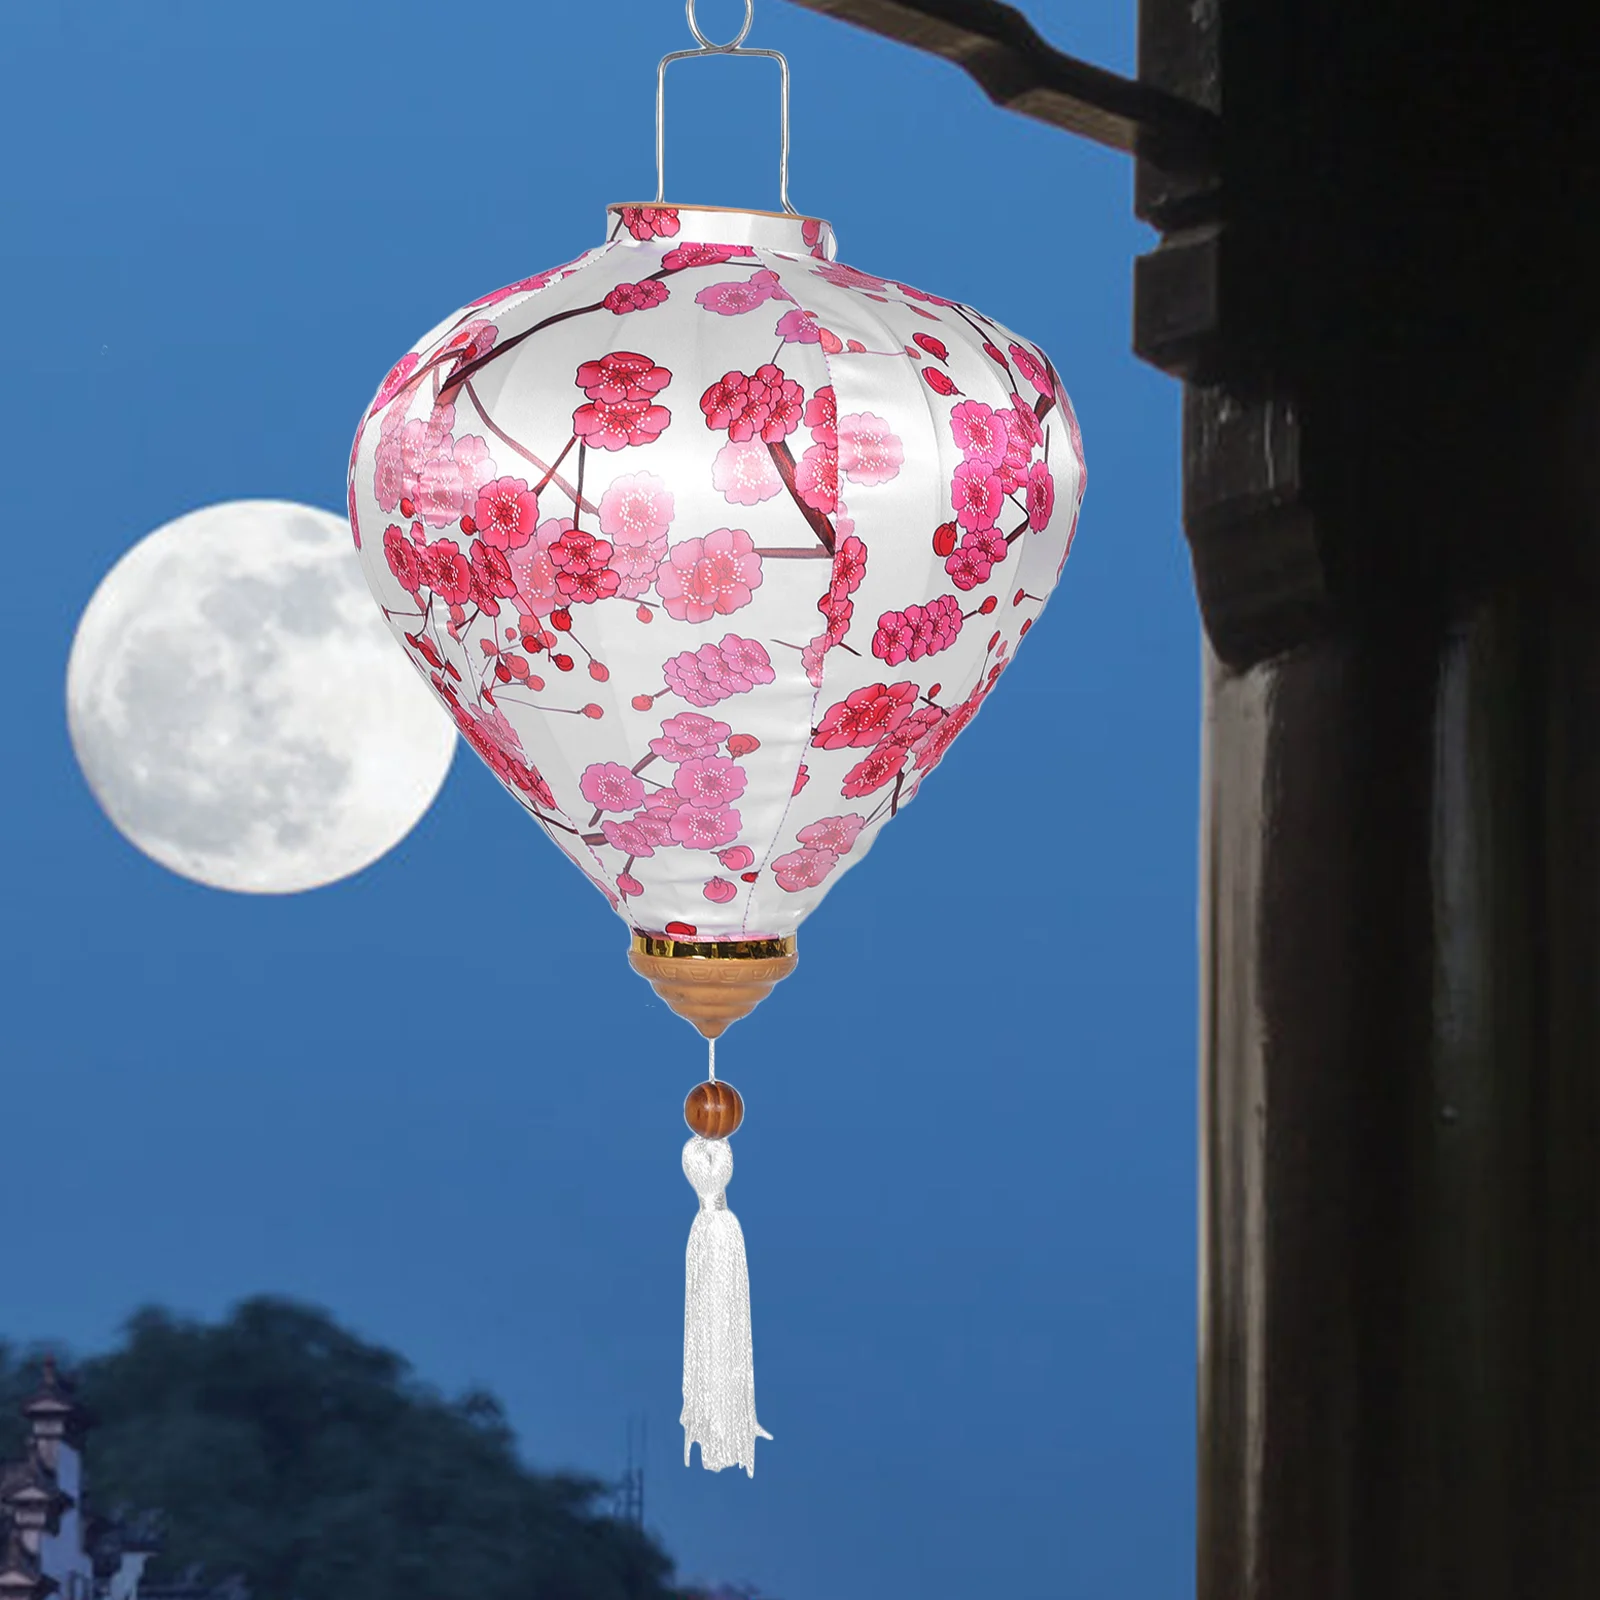 

Старинный фонарь, свадебные украшения, цветочный узор, подвеска в китайском стиле, праздничный праздник, праздник средней осени